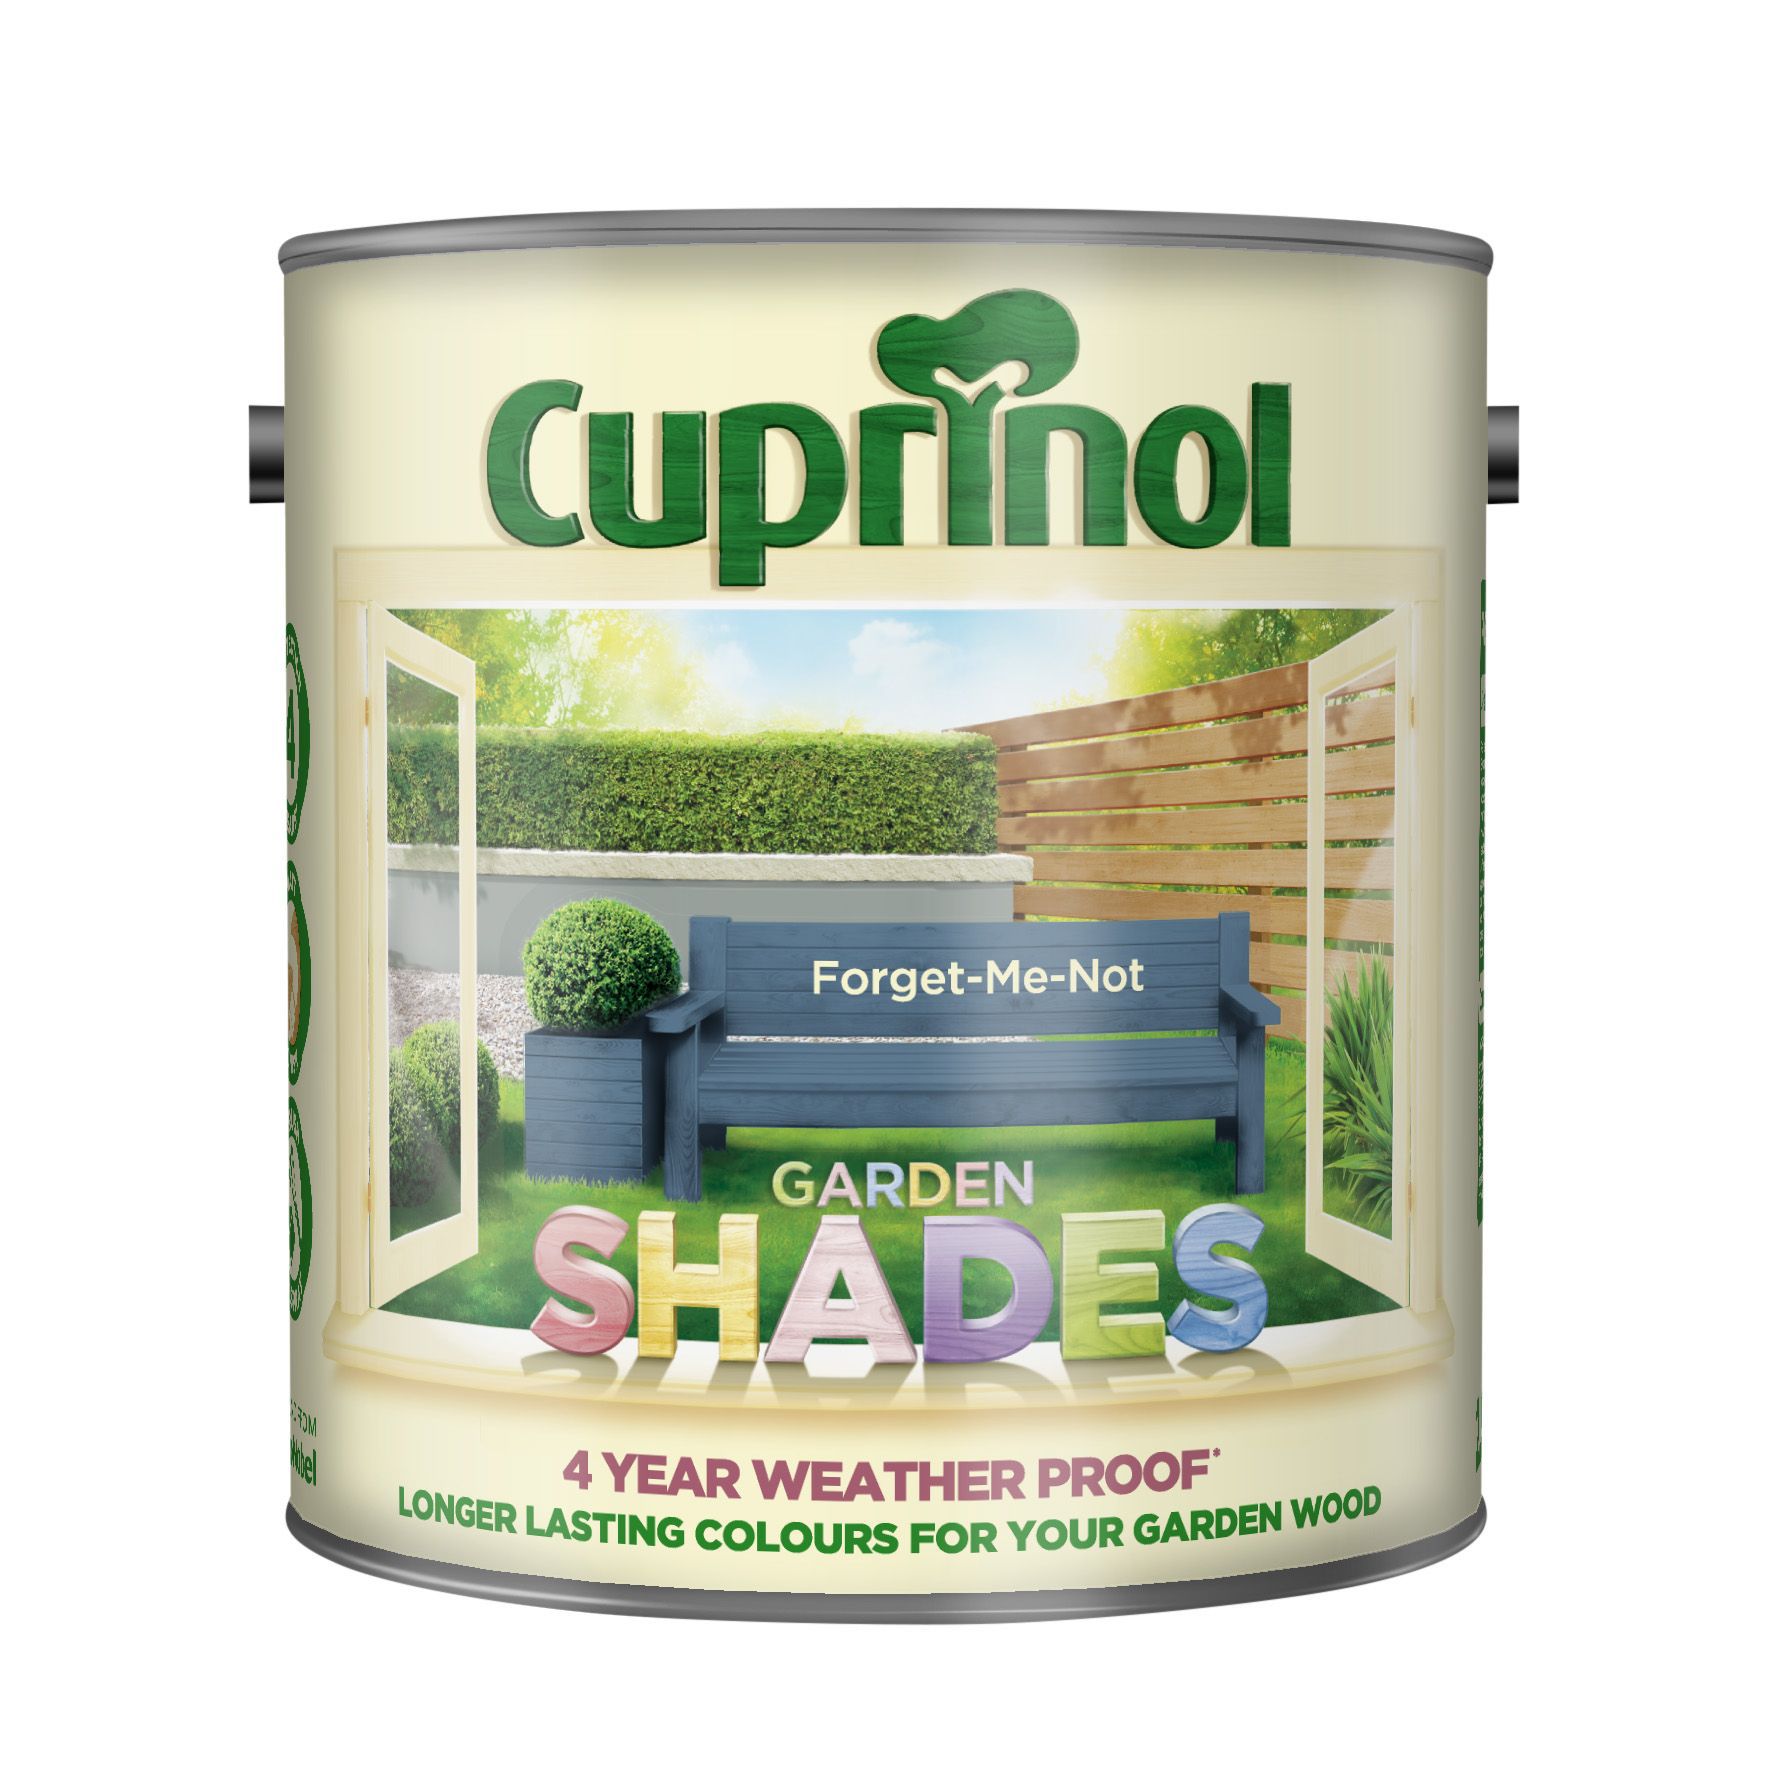 Cuprinol Garden shades Forget me not Matt Exterior Wood paint, 5L